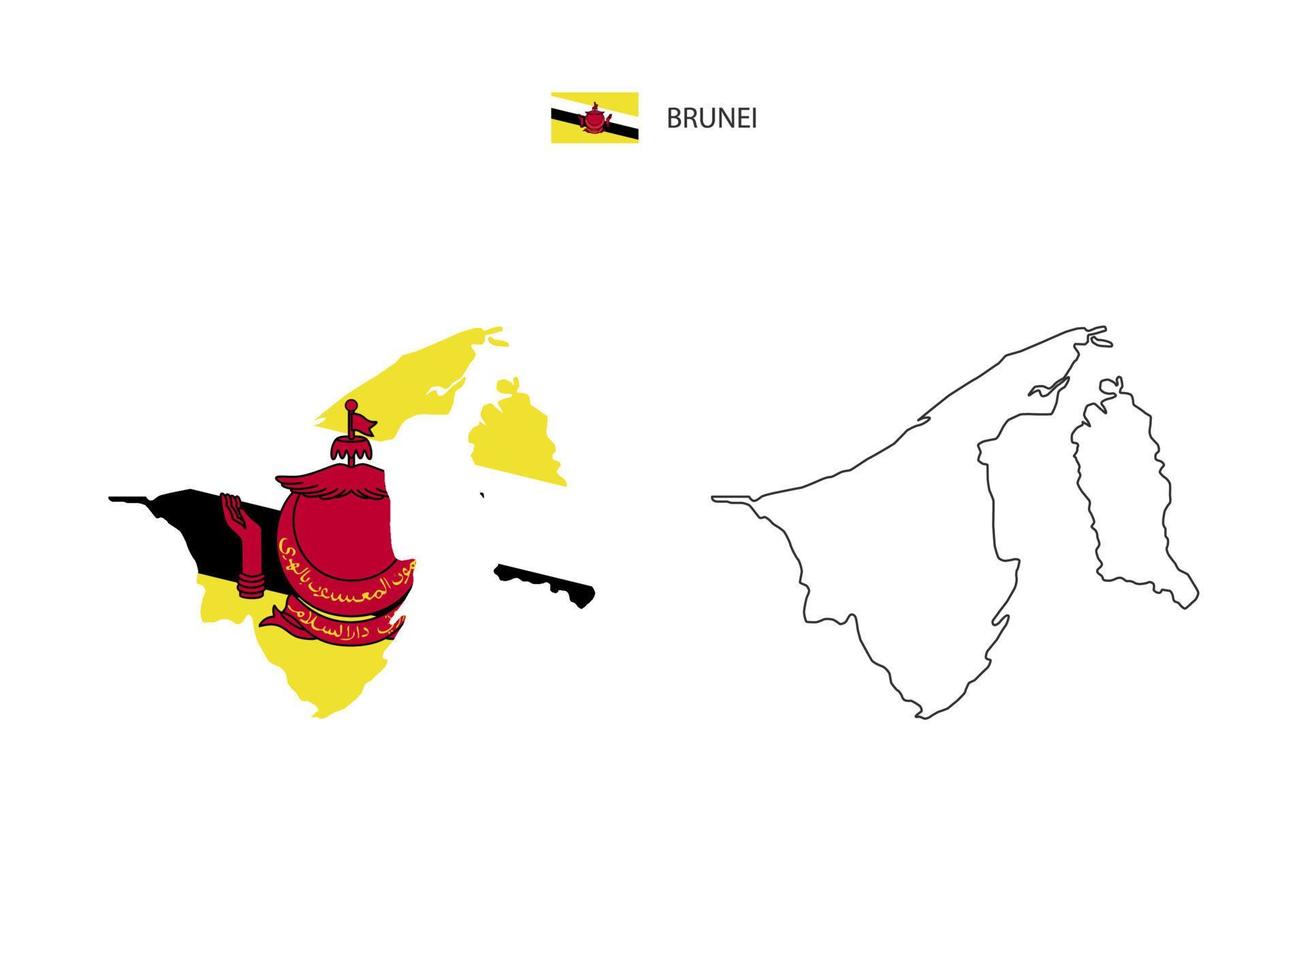 vector de ciudad de mapa de brunei dividido por estilo de simplicidad de contorno. tiene 2 versiones, versión de línea delgada negra y versión de color de bandera de país. ambos mapas estaban en el fondo blanco.